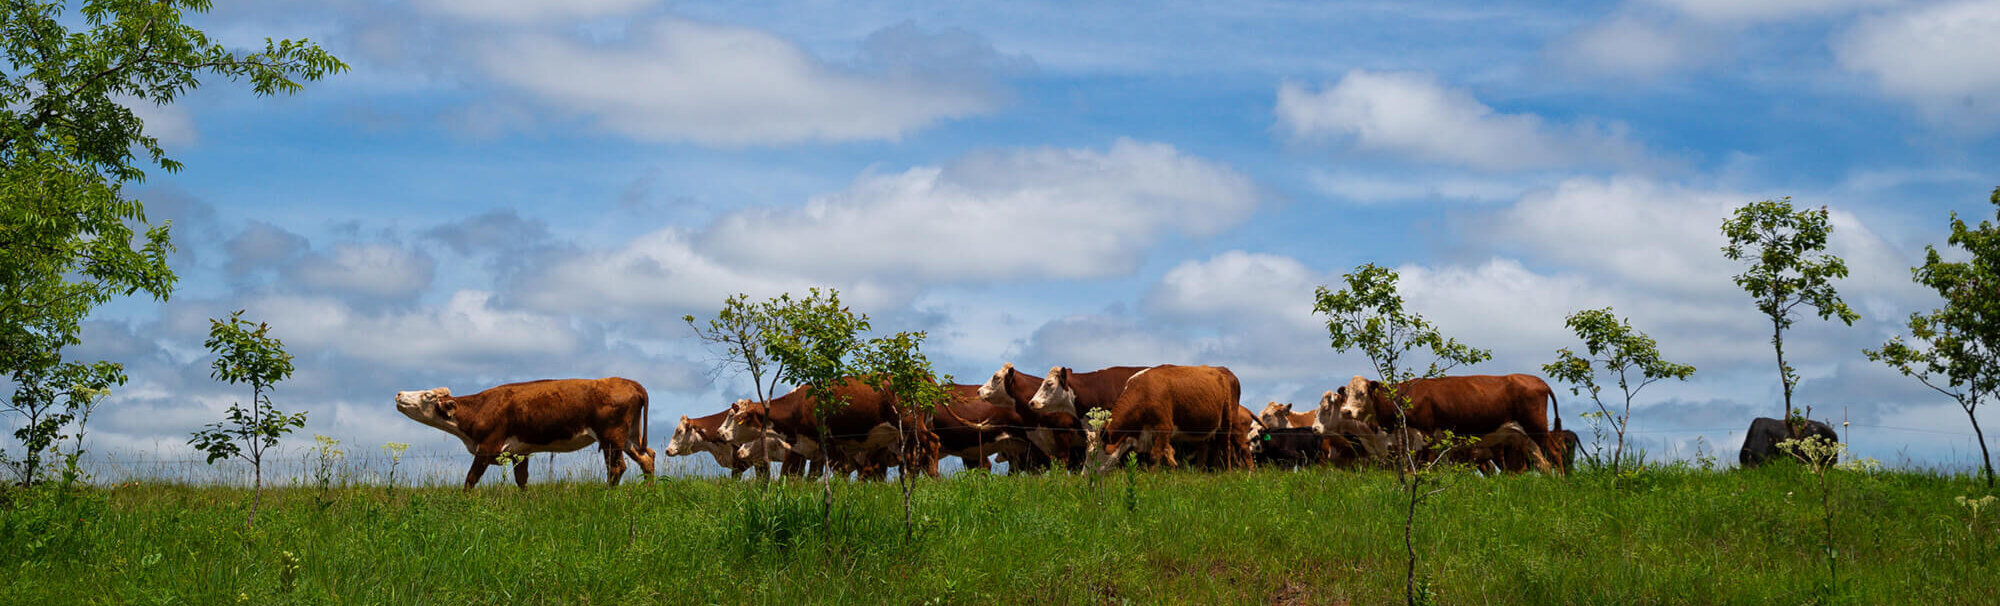 Cattle grazing under a blue sky